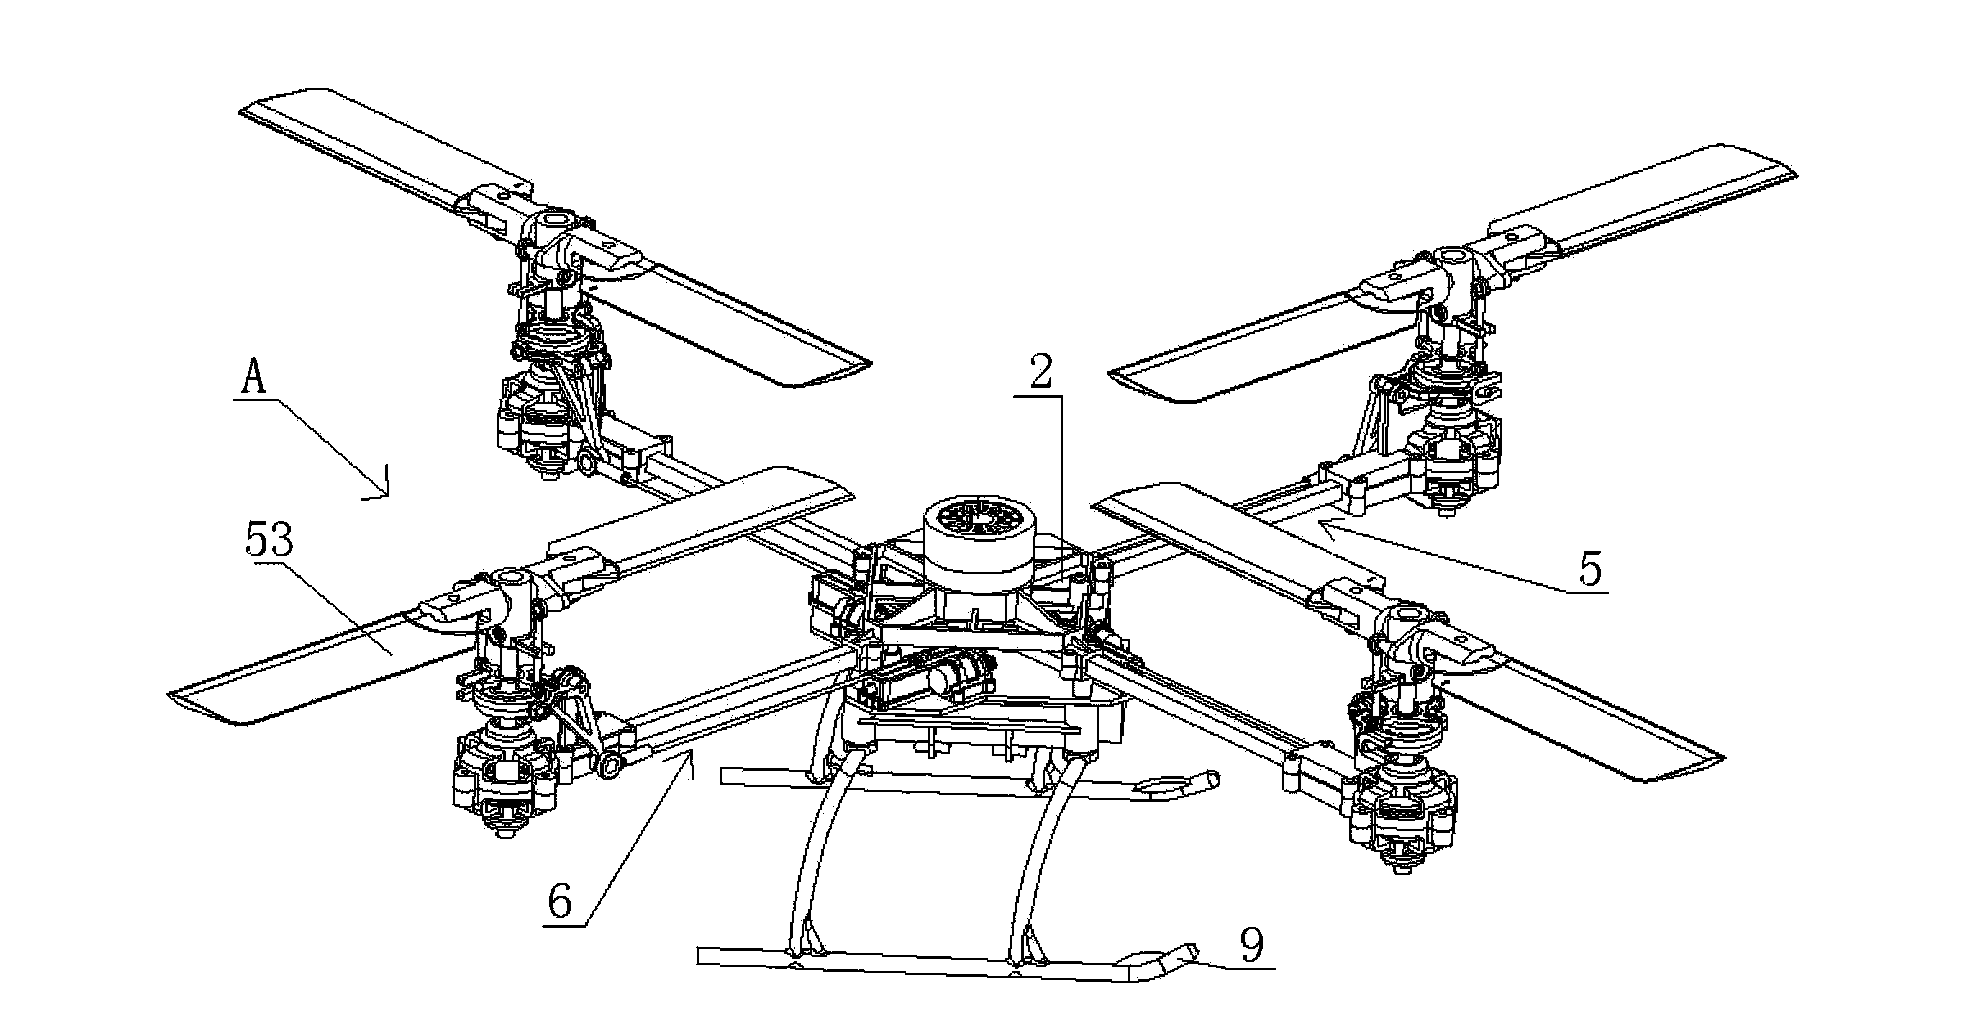 Multi-rotor wing aircraft